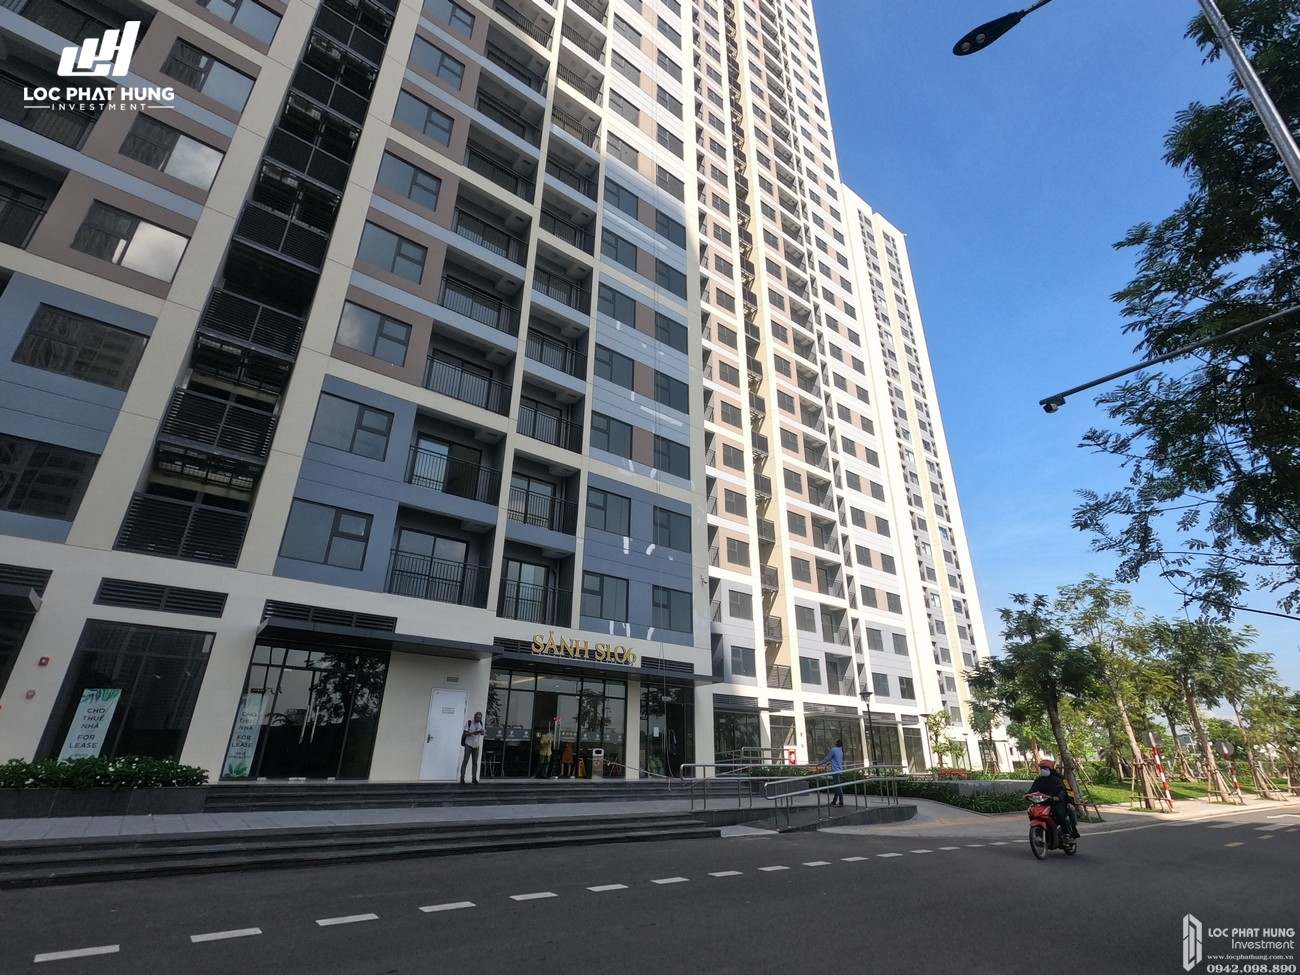 Vị trí địa chỉ dự án căn hộ chung cư Vinhomes Grand Park Quận 9 Đường Nguyễn Xiển chủ đầu tư Vingroup